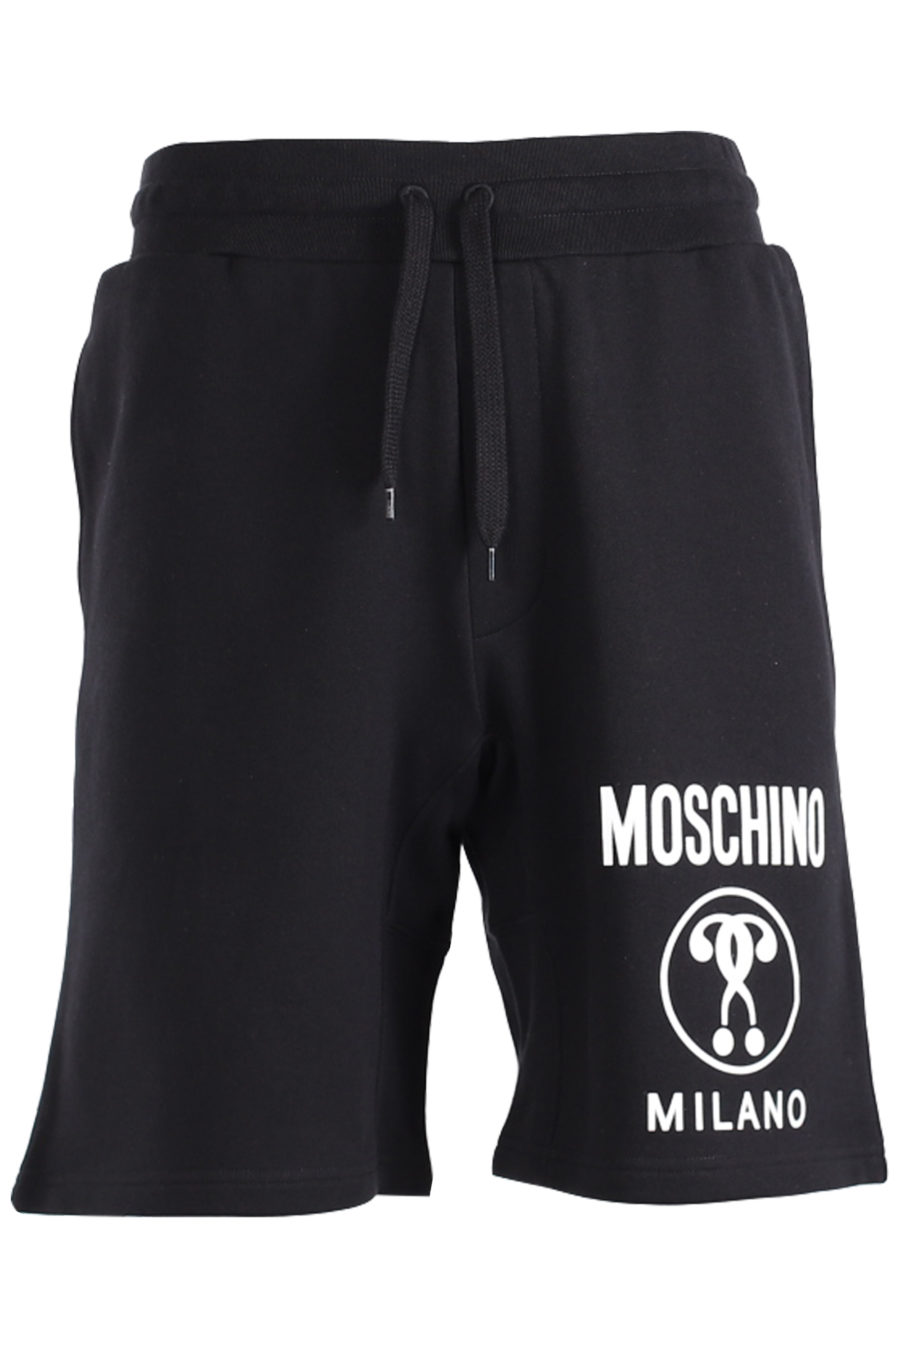 Schwarze Shorts mit weißem Logo vorne - IMG 1415